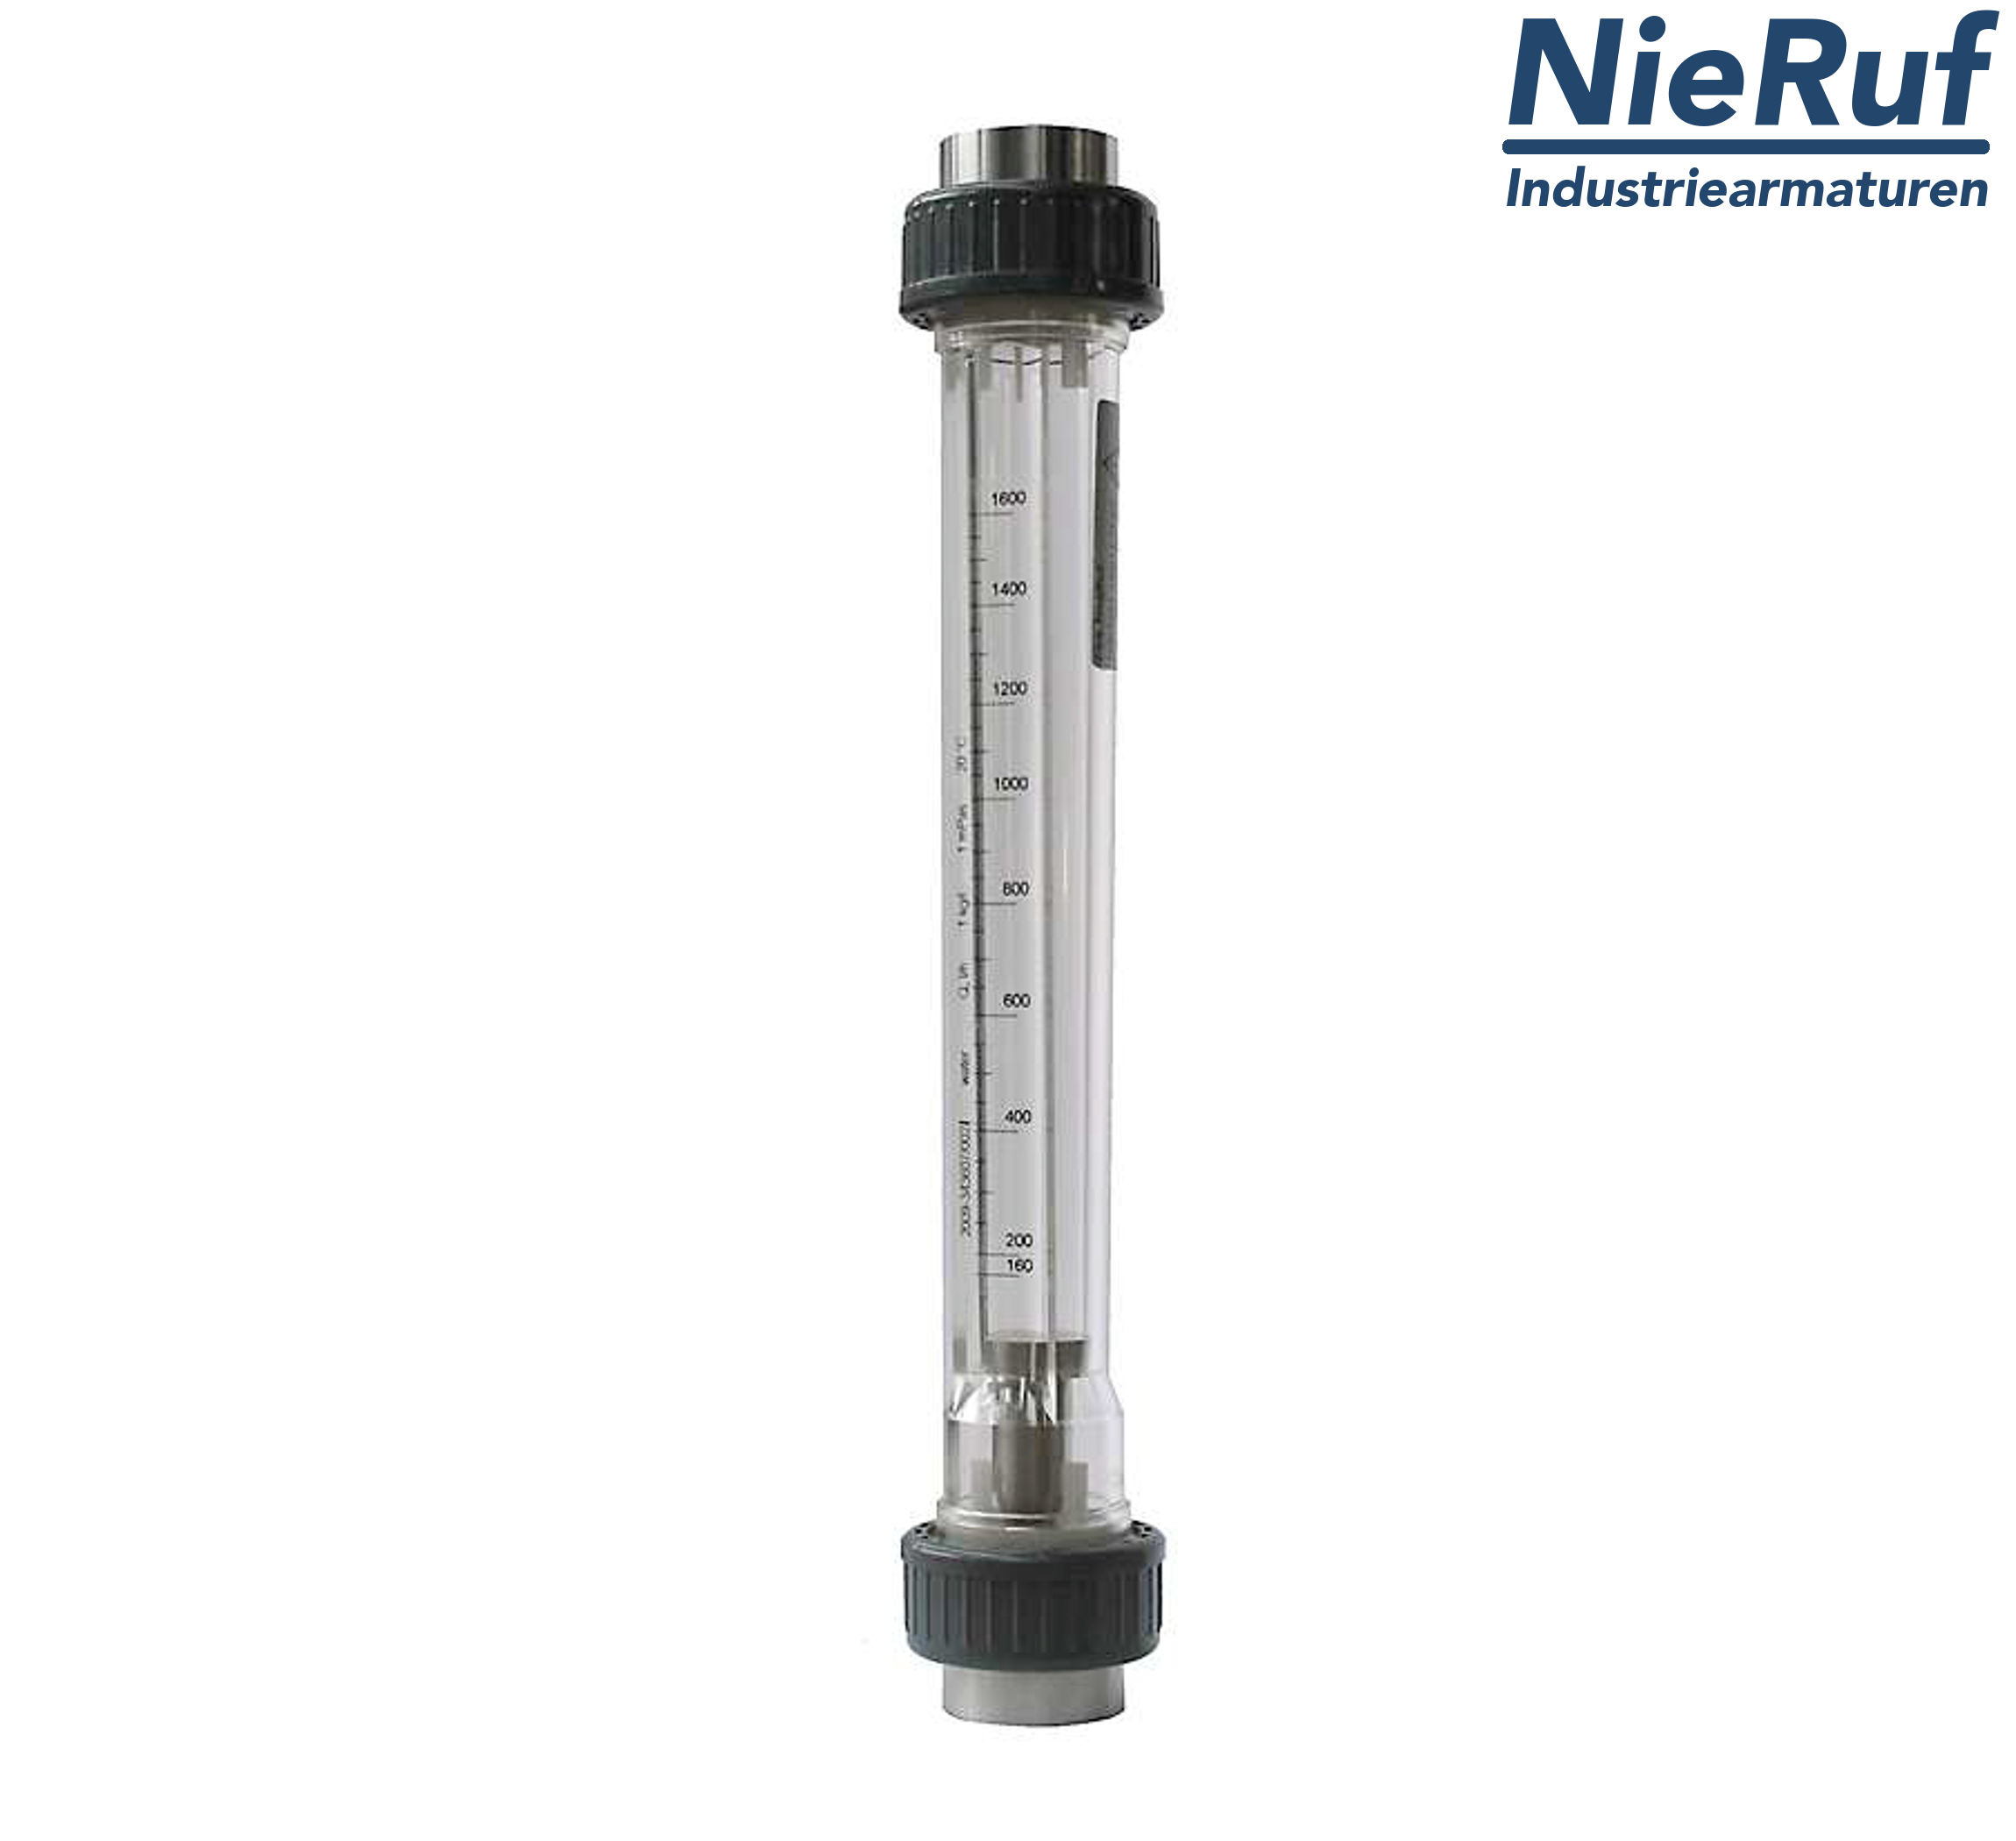 débitmètre à flotteur 3/4" pouce NPT 160,0 - 1600 l/h eau NBR